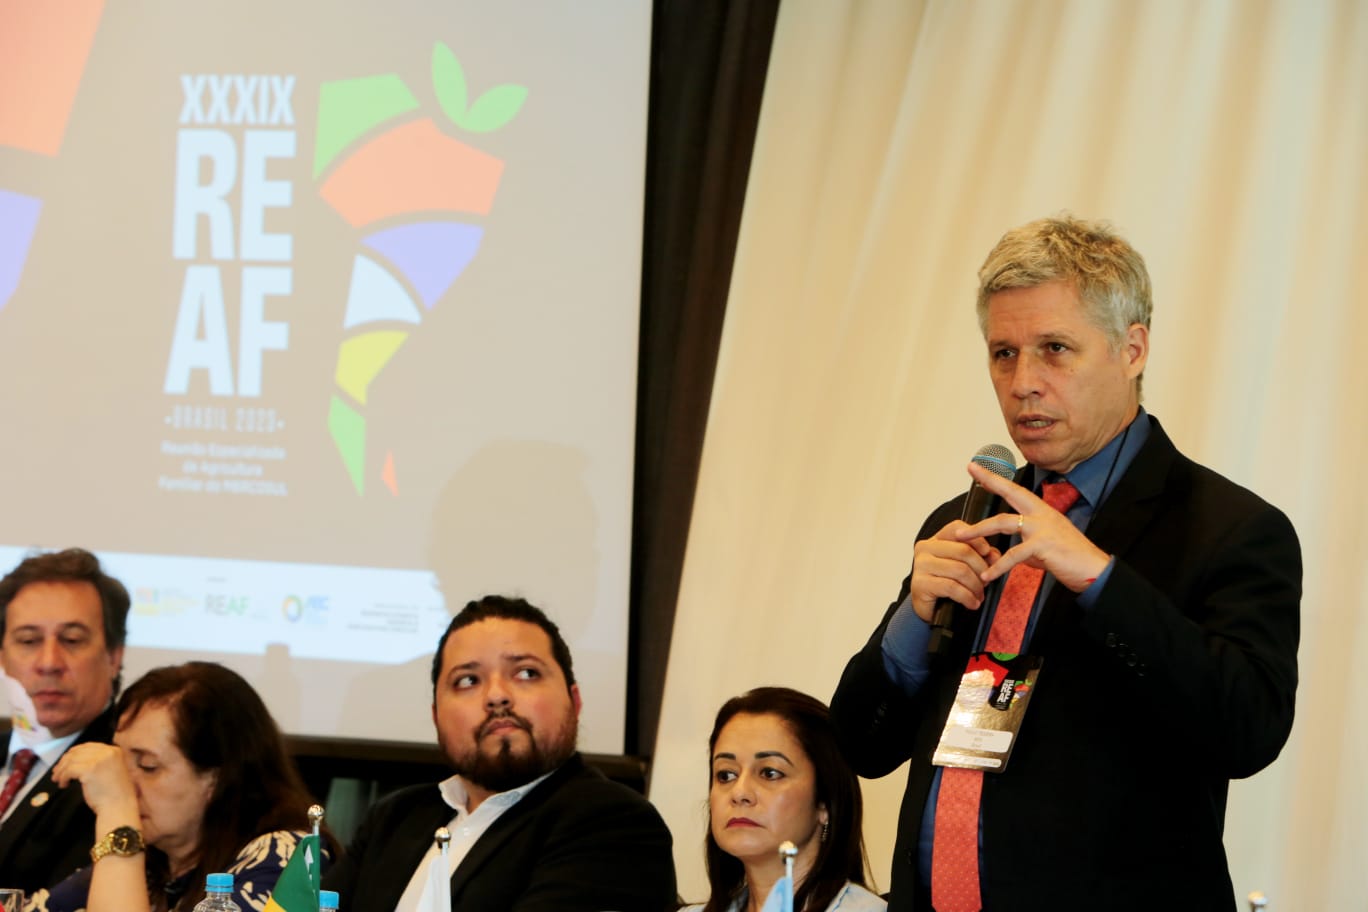 Líderes do Mercosul debatem sobre Agricultura Familiar no Rio (Foto: Divulgação)